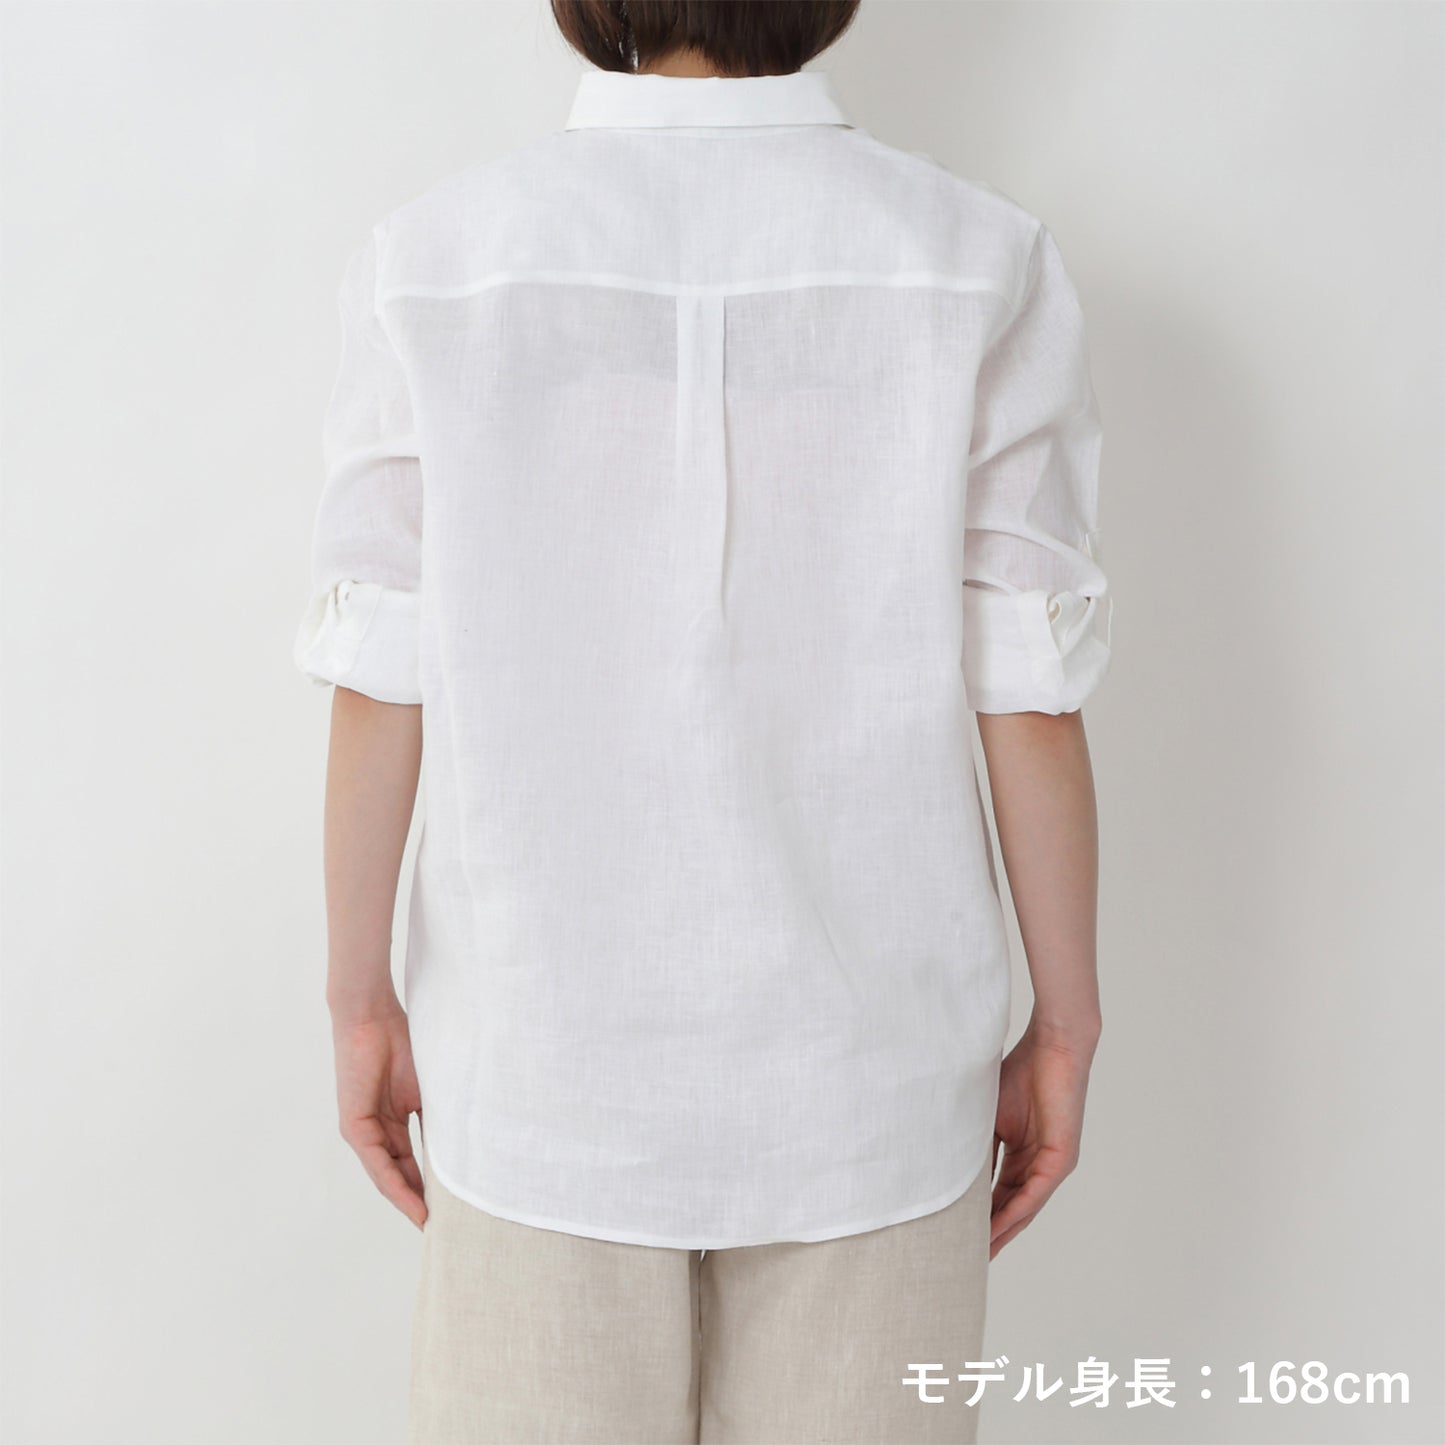 リネンプルオーバーシャツ(model:168cm 着用サイズ:SM)